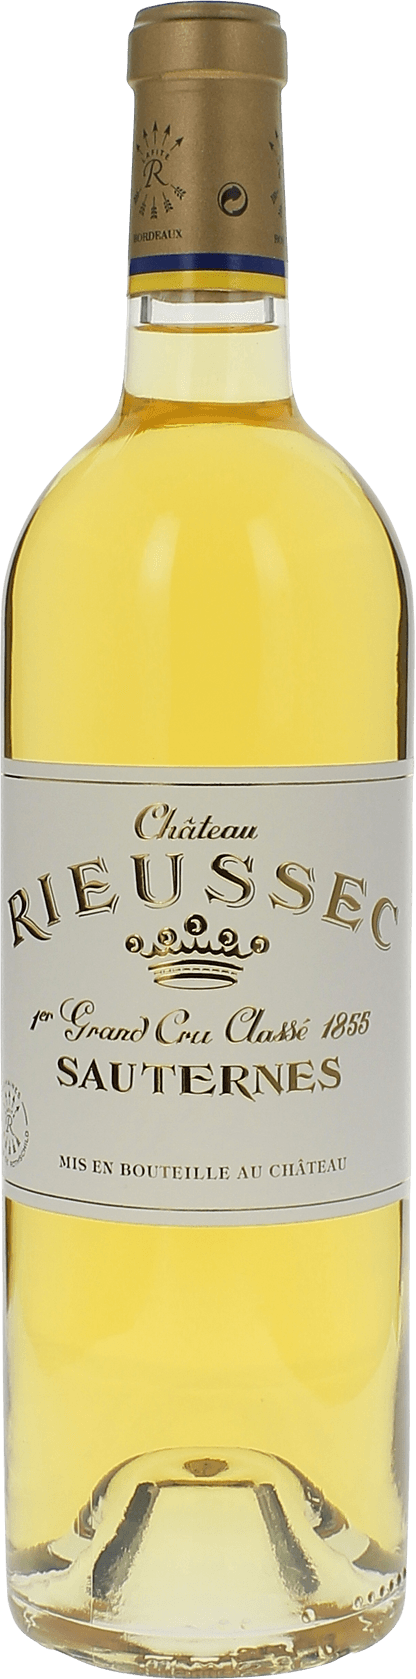 Rieussec 1988 1er cru Sauternes, Bordeaux blanc